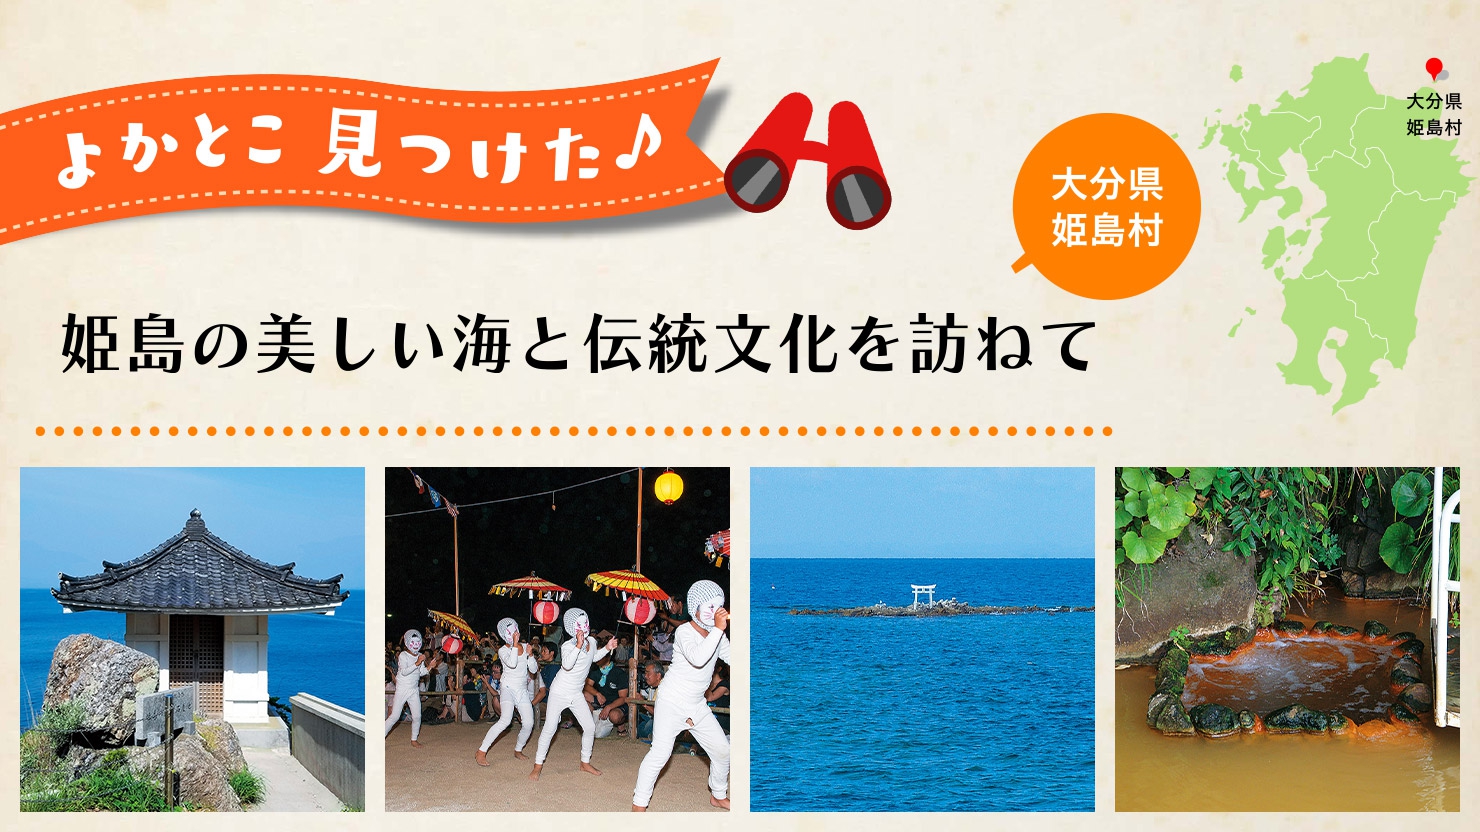 姫島の美しい海と伝統文化を訪ねて 大分県 姫島村